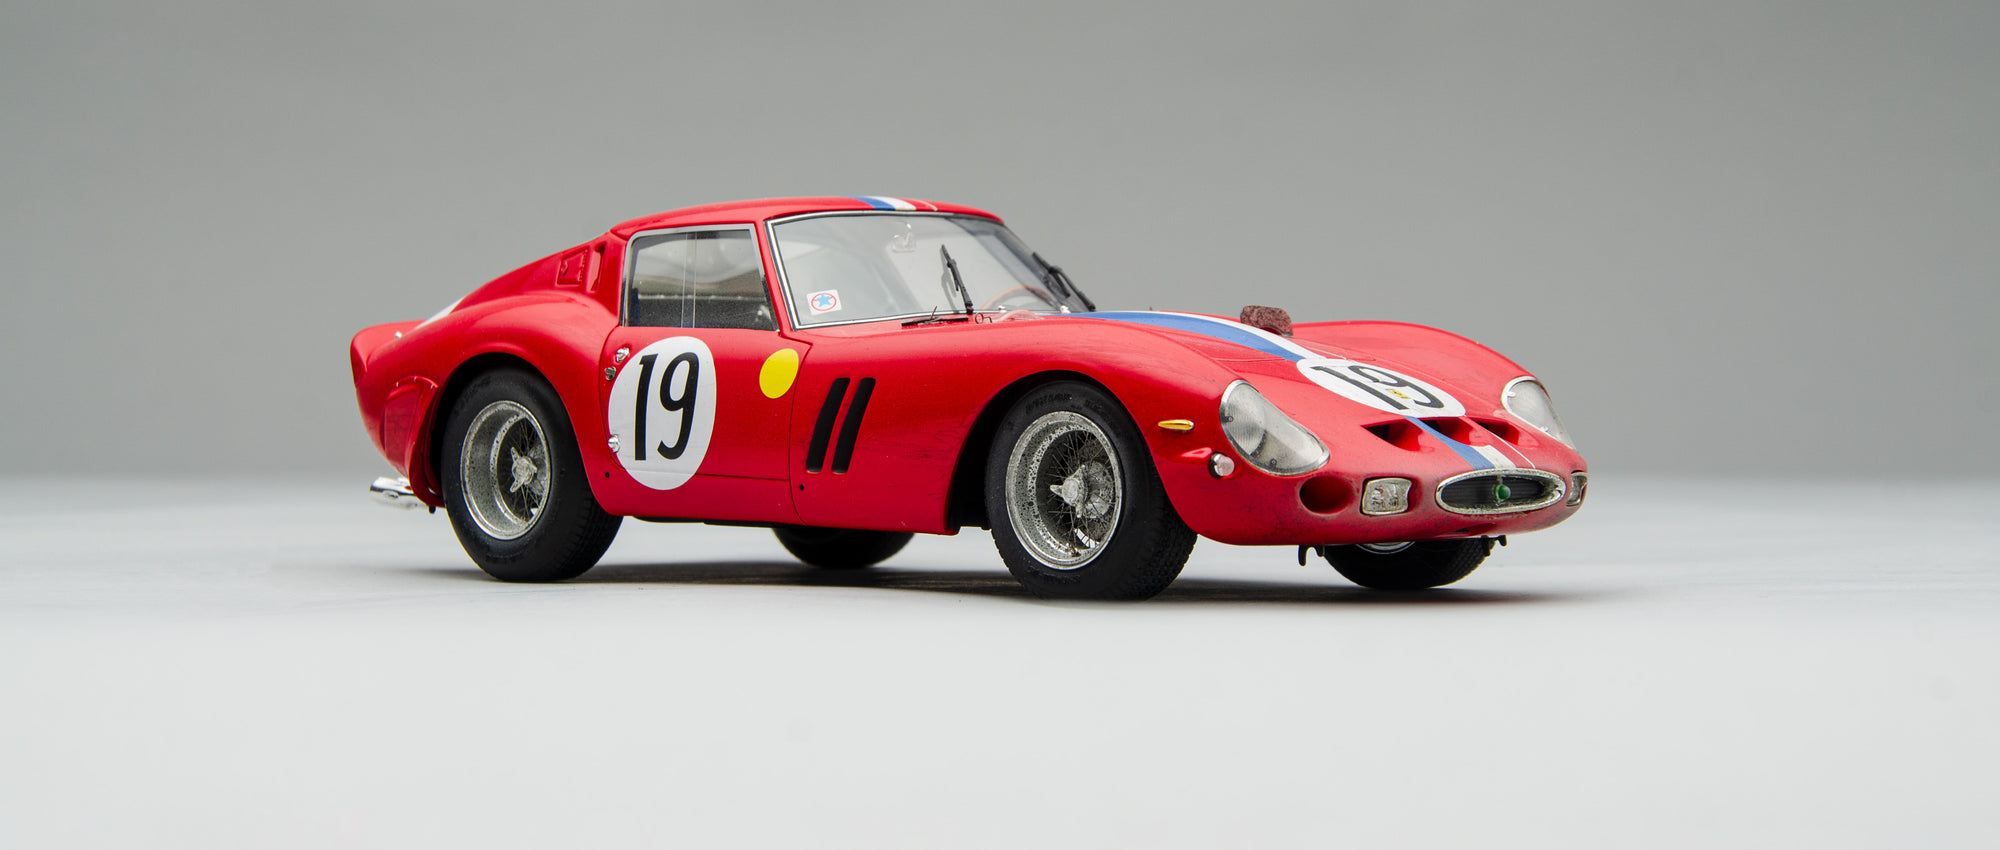 Ferrari 250 GTO - 3705GT - Ganador de la clase de Le Mans 1962 - Con Suciedad de Carrera